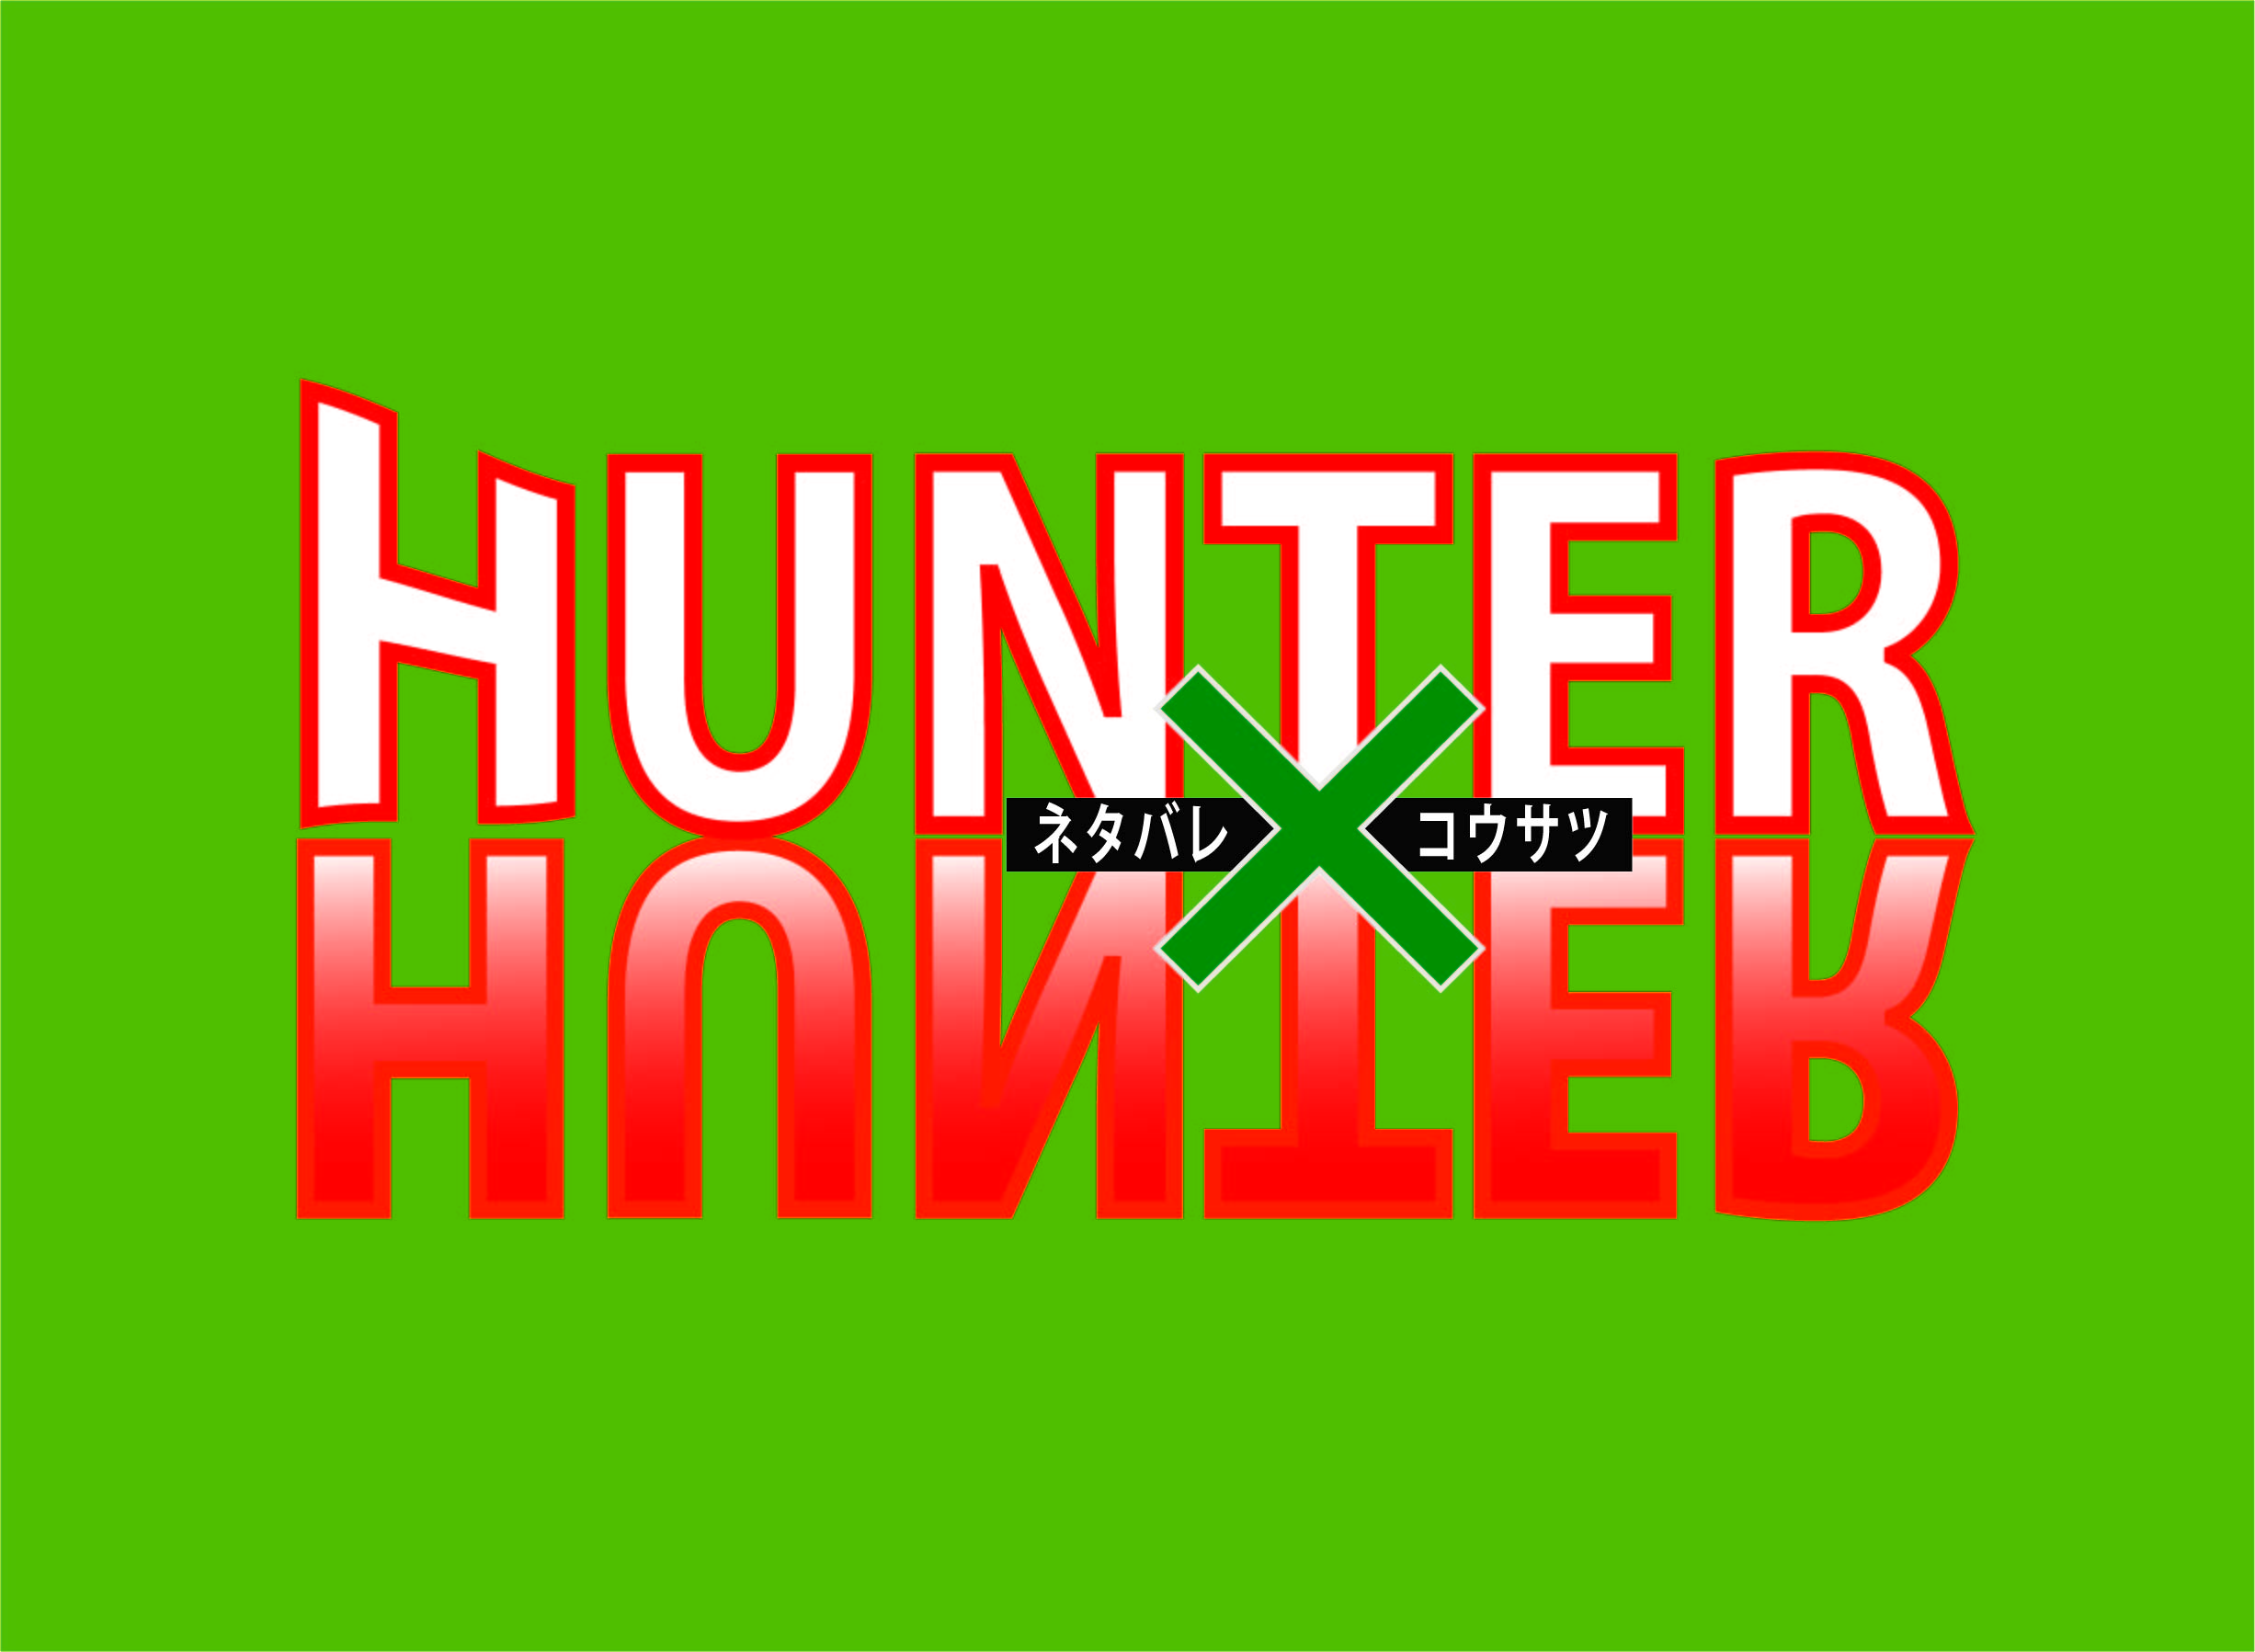 Hunter Hunter ノヴのキャラクター紹介 好きなシーン 漫画wave